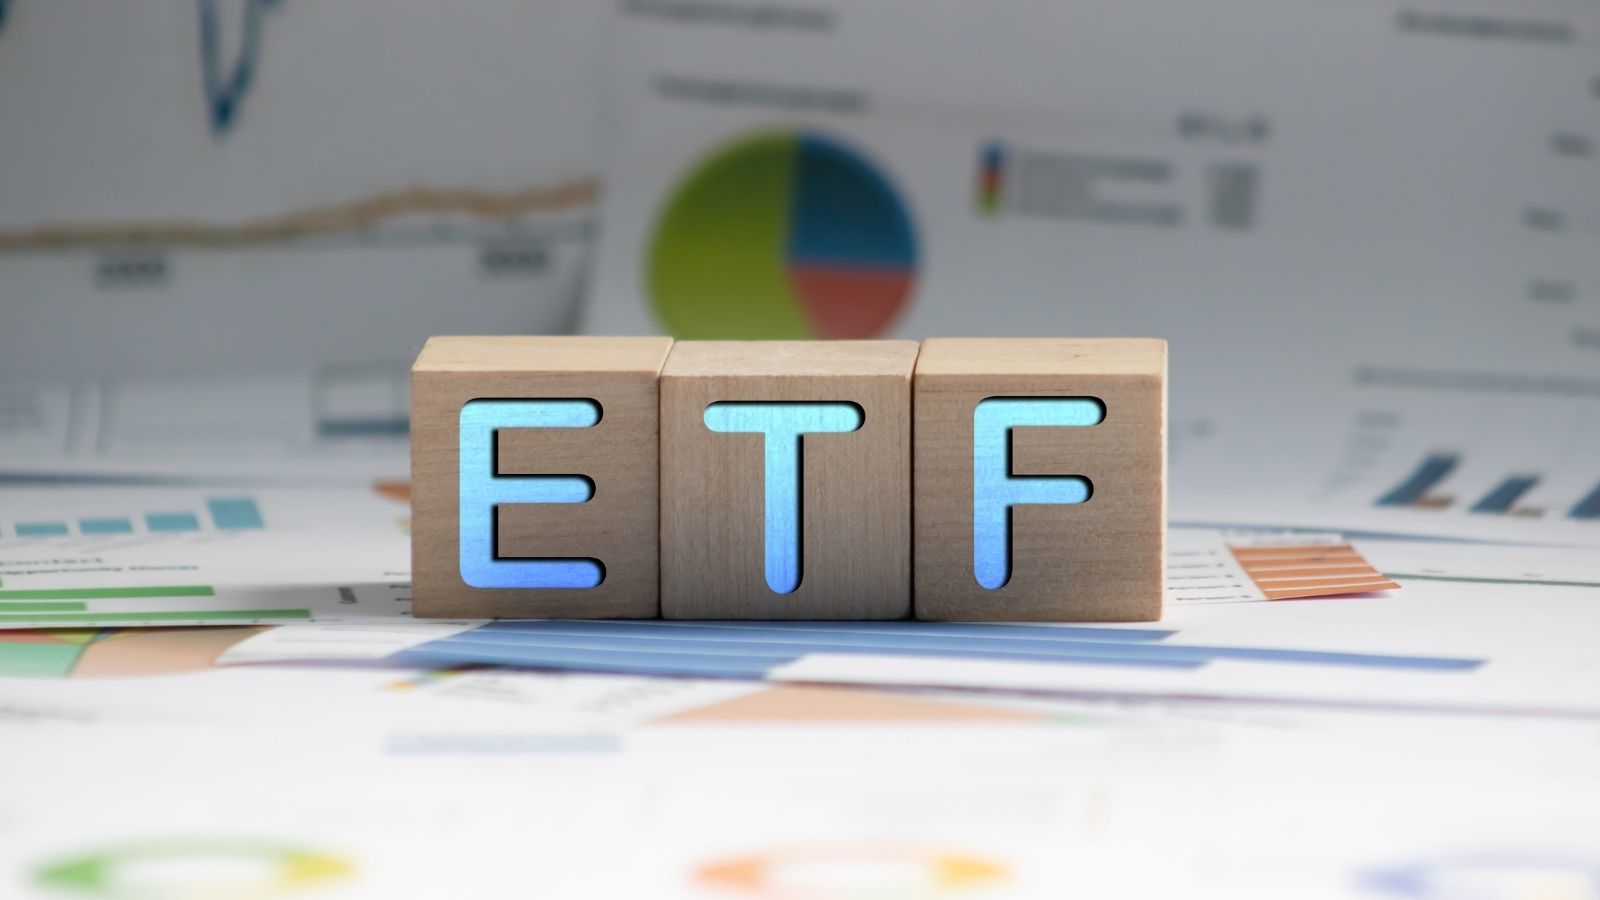 etf vs mutual funds